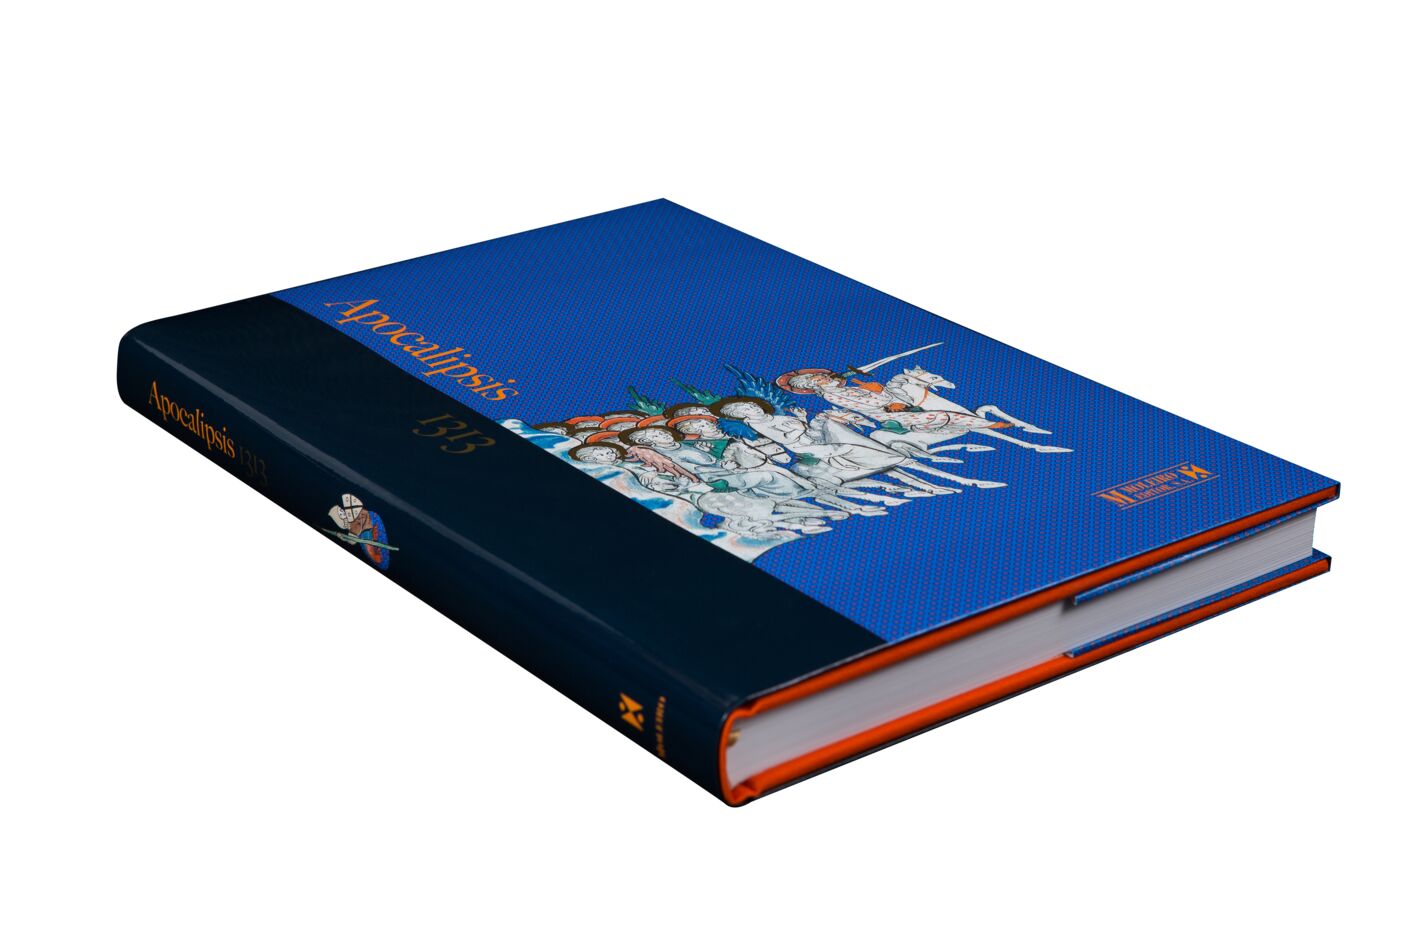 Fotografí­a en perspectiva de la portada y lomo del libro del Apocalipsis 1313 en formato libro de arte.